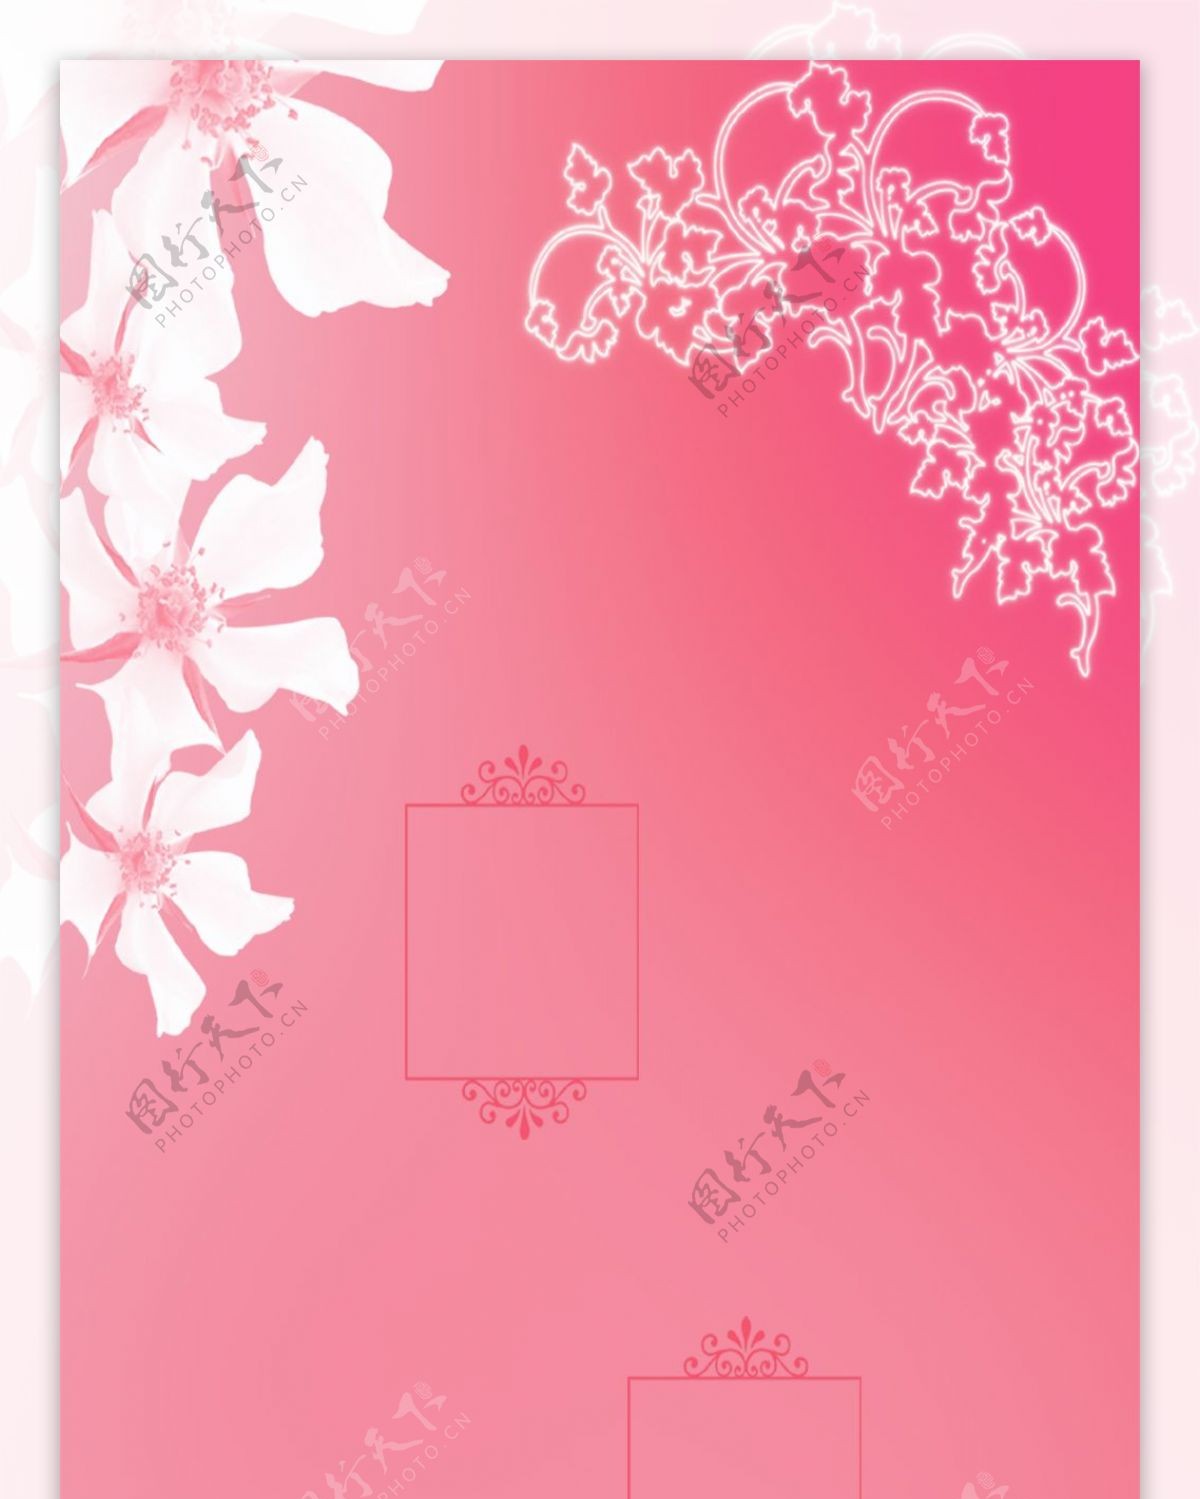 精美粉色花儿展架背景设计模板素材画面